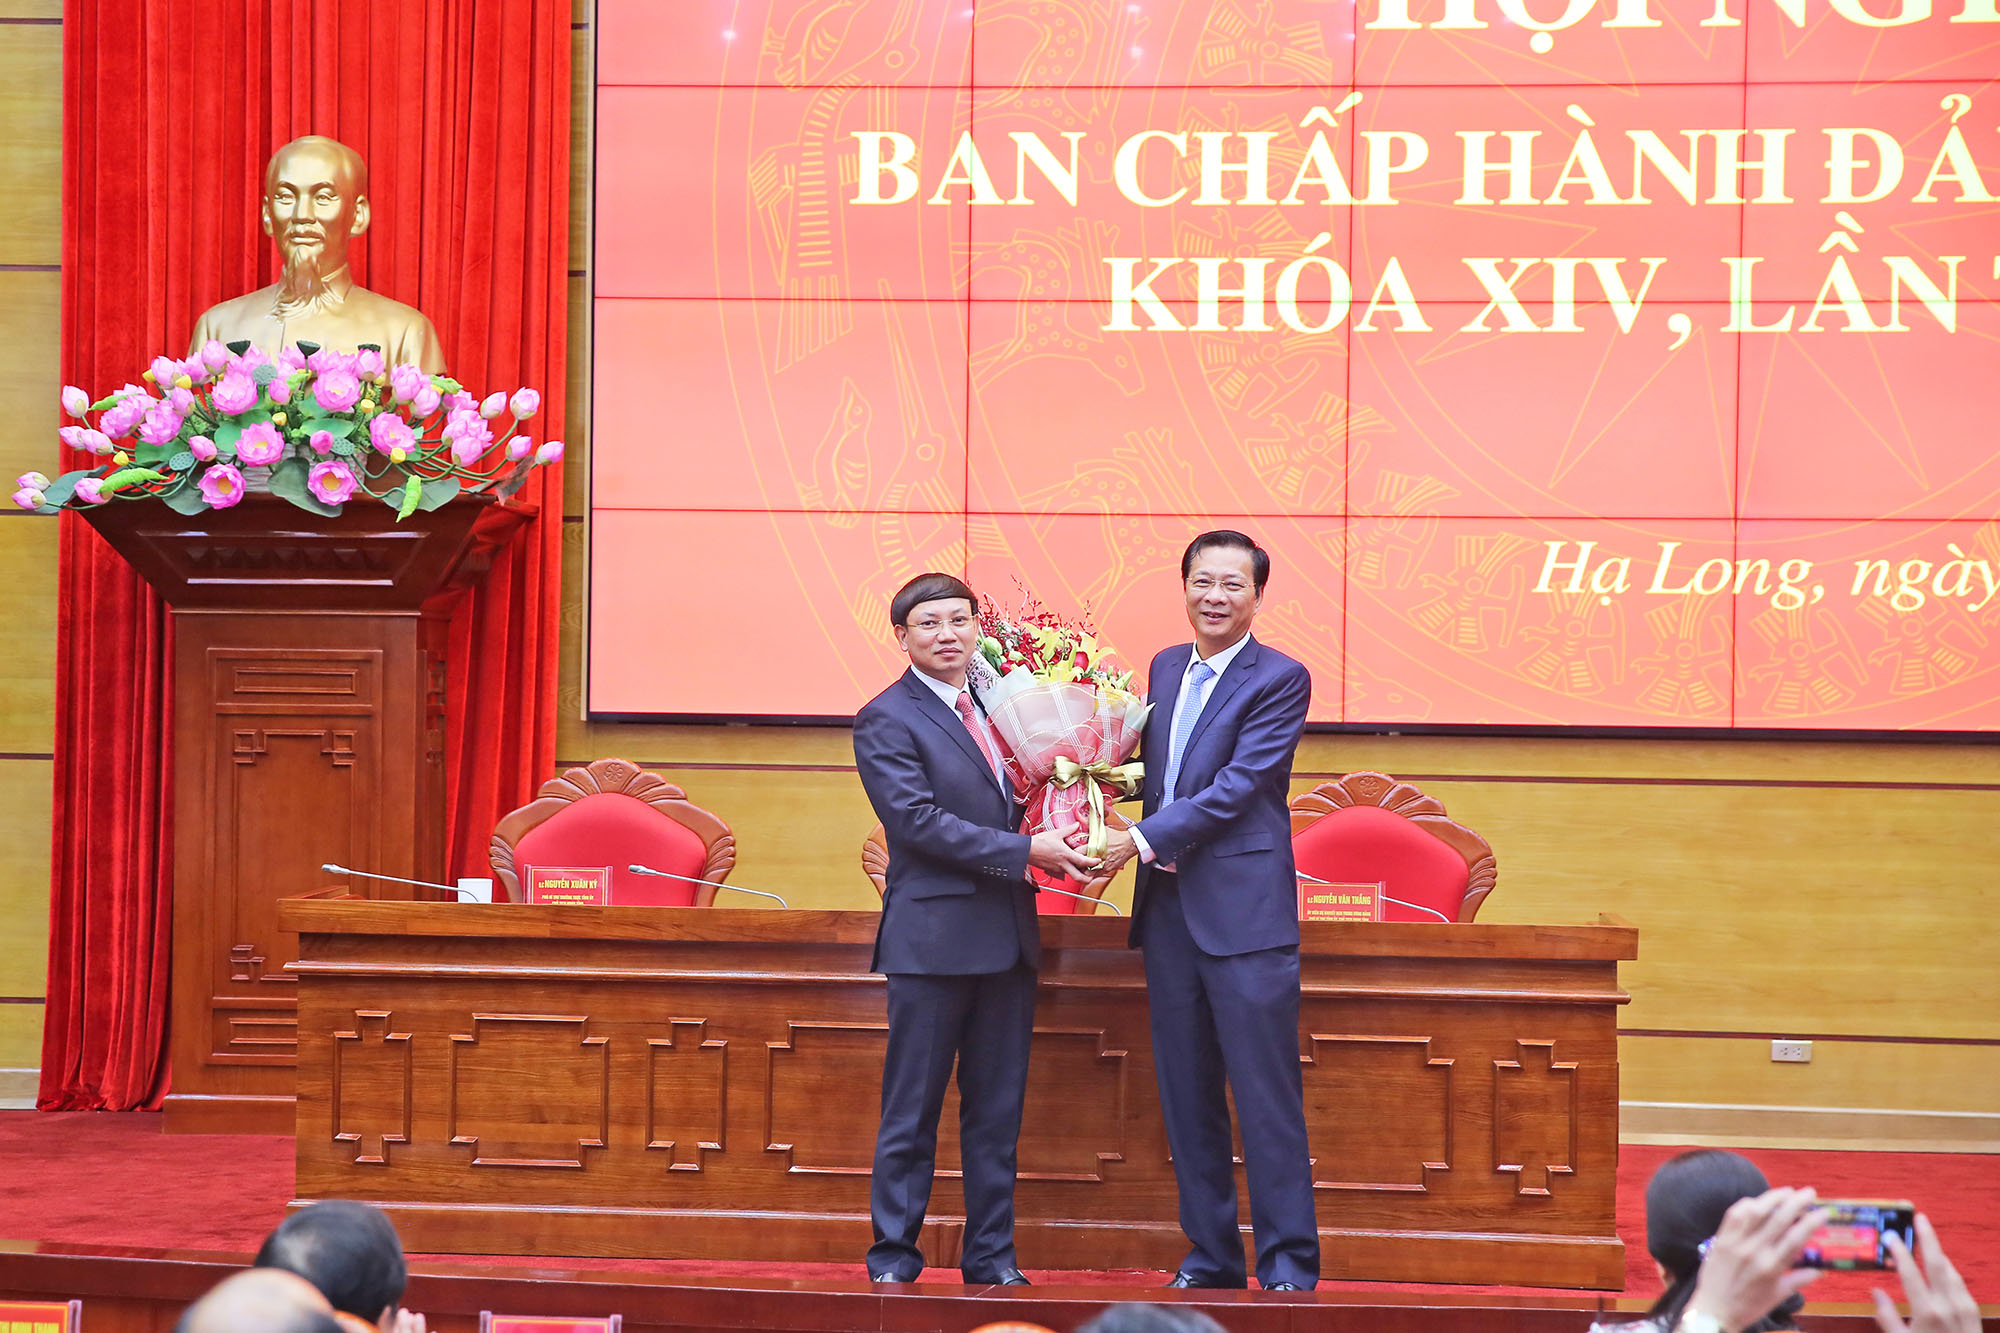 Đồng chí Nguyễn Văn Đọc tặng hoa chúc mừng đồng chí Nguyễn Xuân Ký được bầu làm Bí thư Tỉnh ủy, khóa XIV, nhiệm kỳ 2015 - 2020.